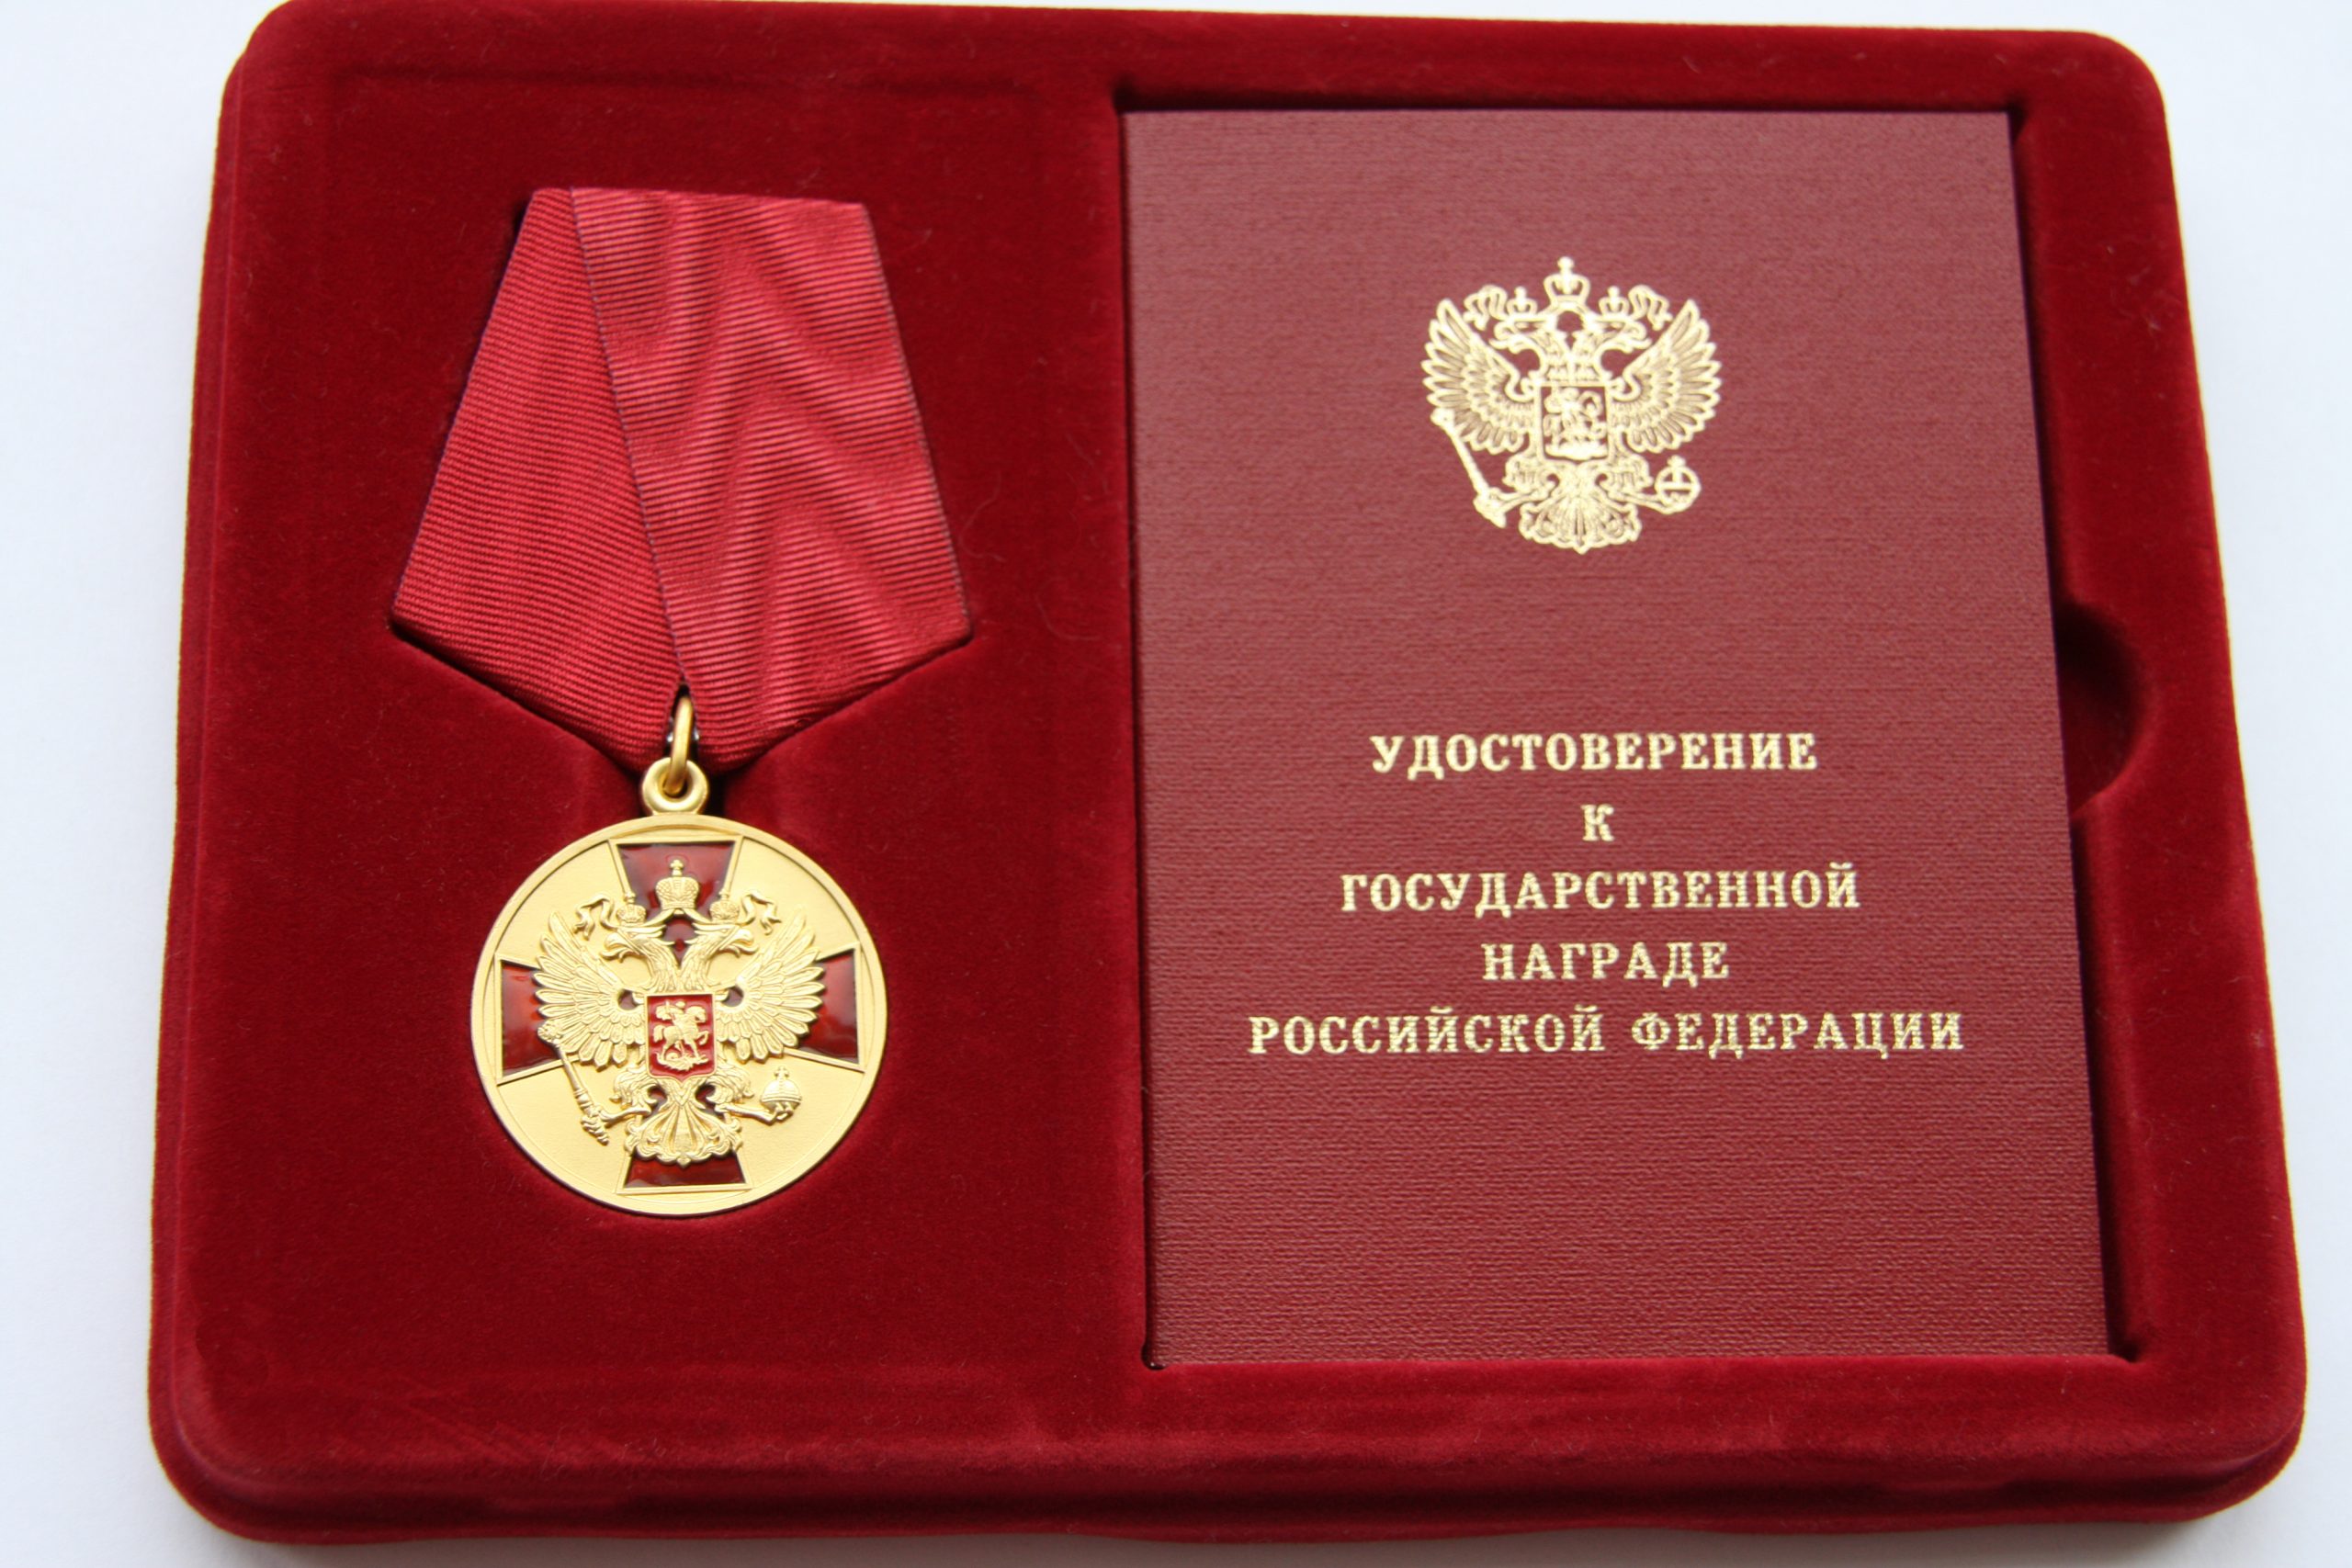 Двоих брянских железнодорожников наградили медалью ордена «За заслуги перед Отечеством»